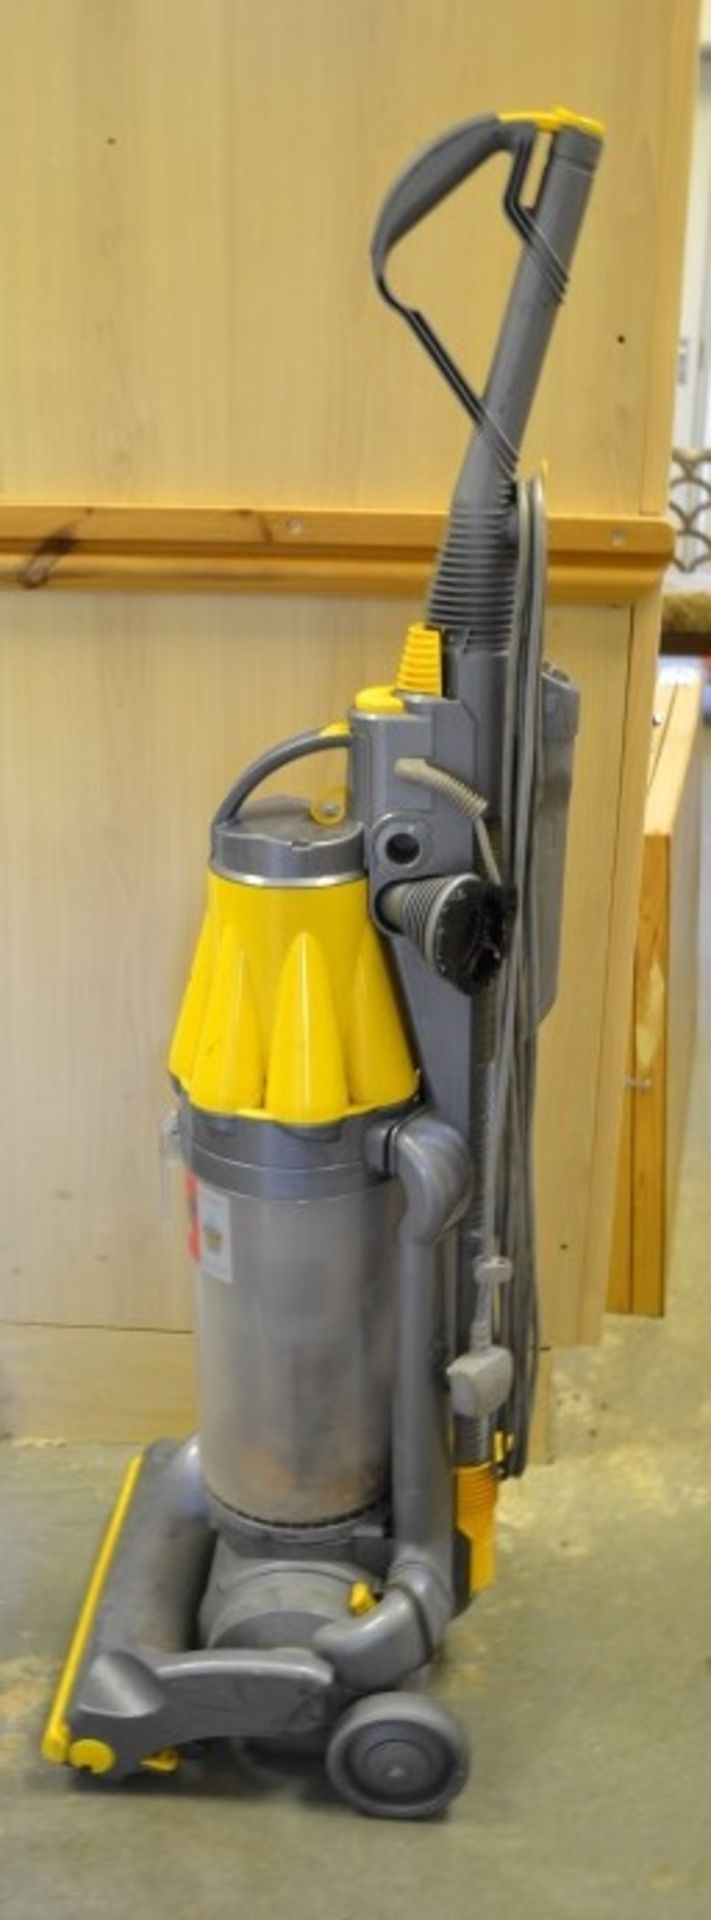 1 x Dyson Vacuum Cleaner - Ref: KHF163 / RRG - CL168 - Location: Flintshire CH6 **NO VAT** Please - Image 4 of 4